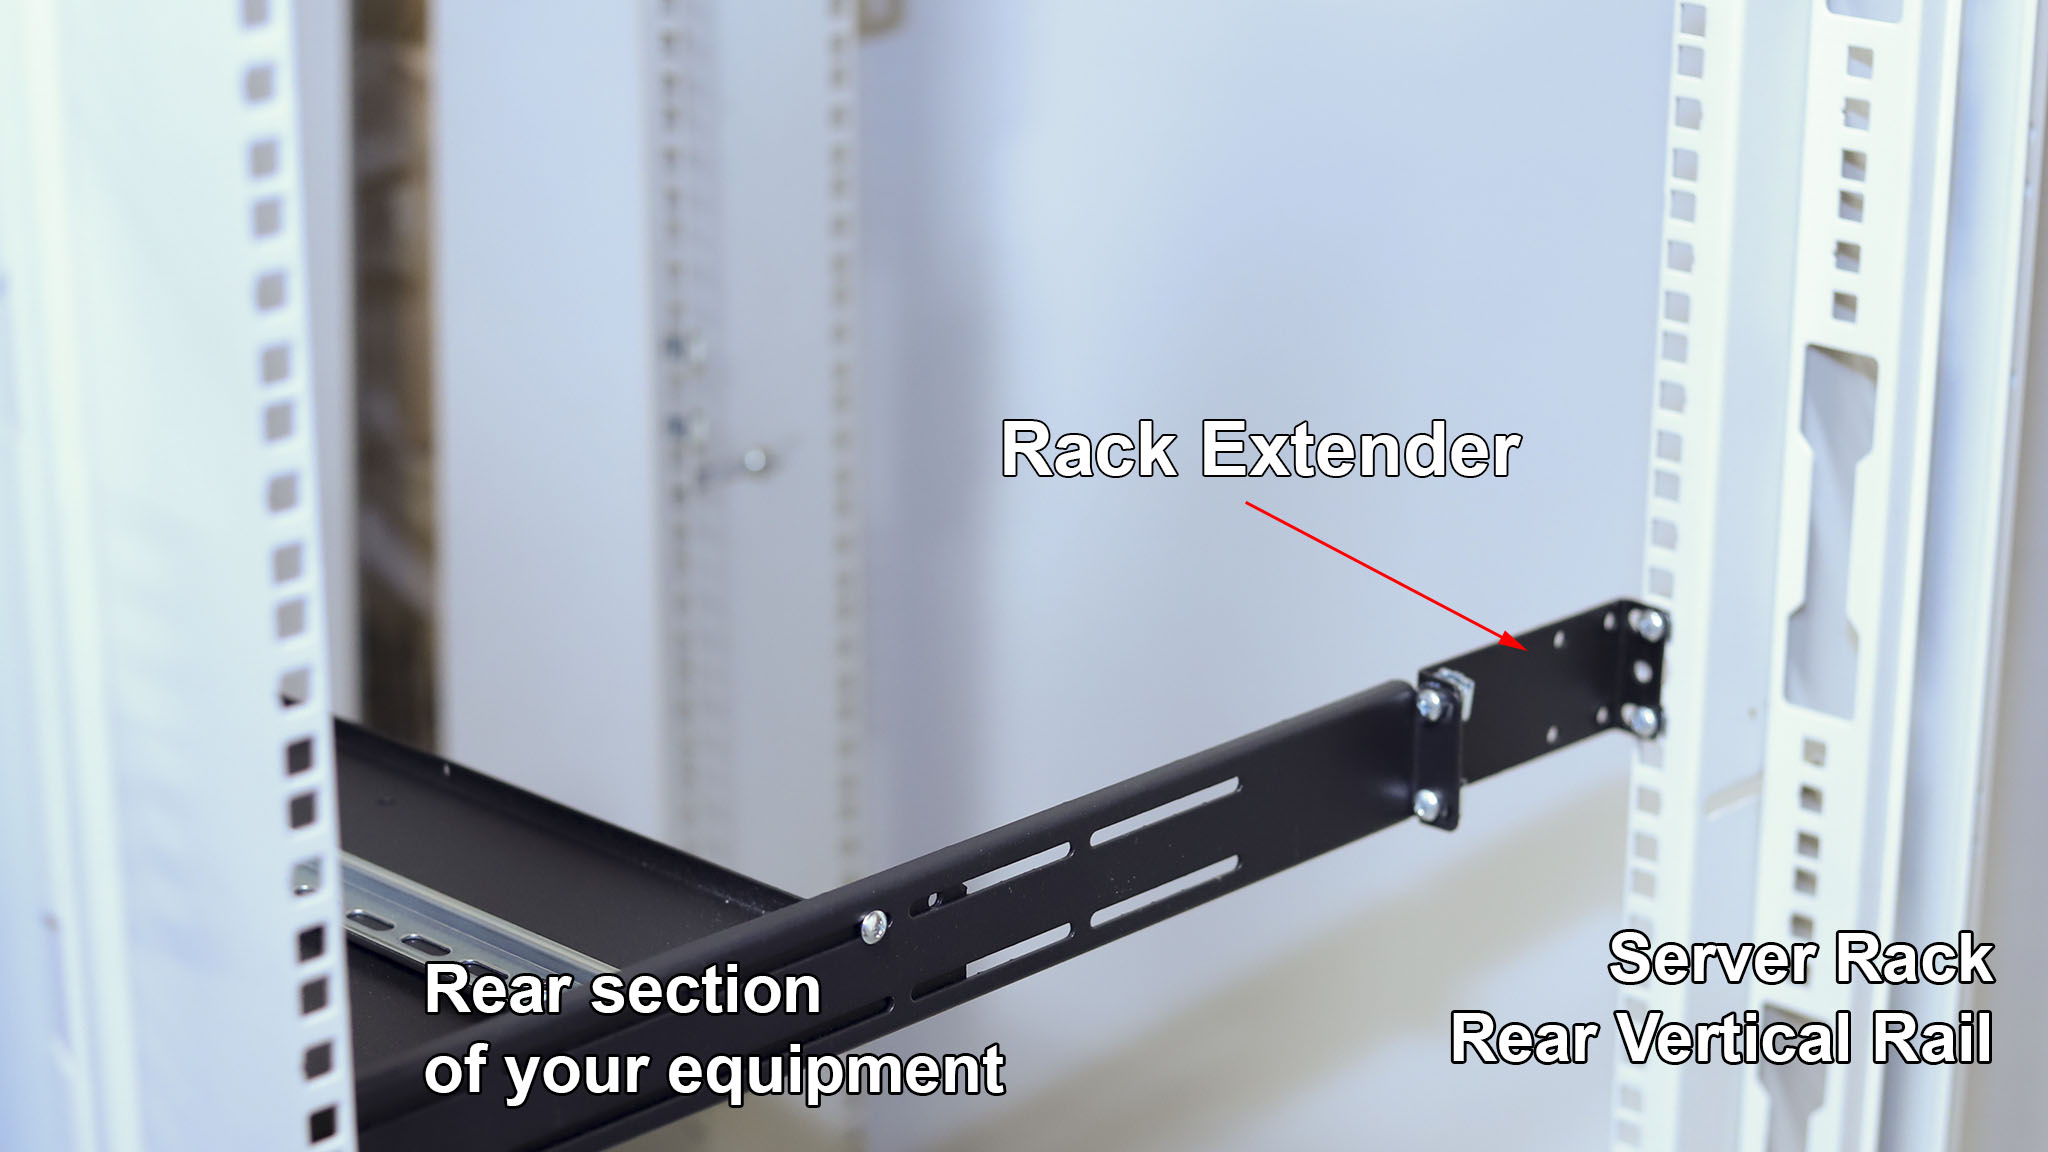 What is IAB103V10-2U rack extender